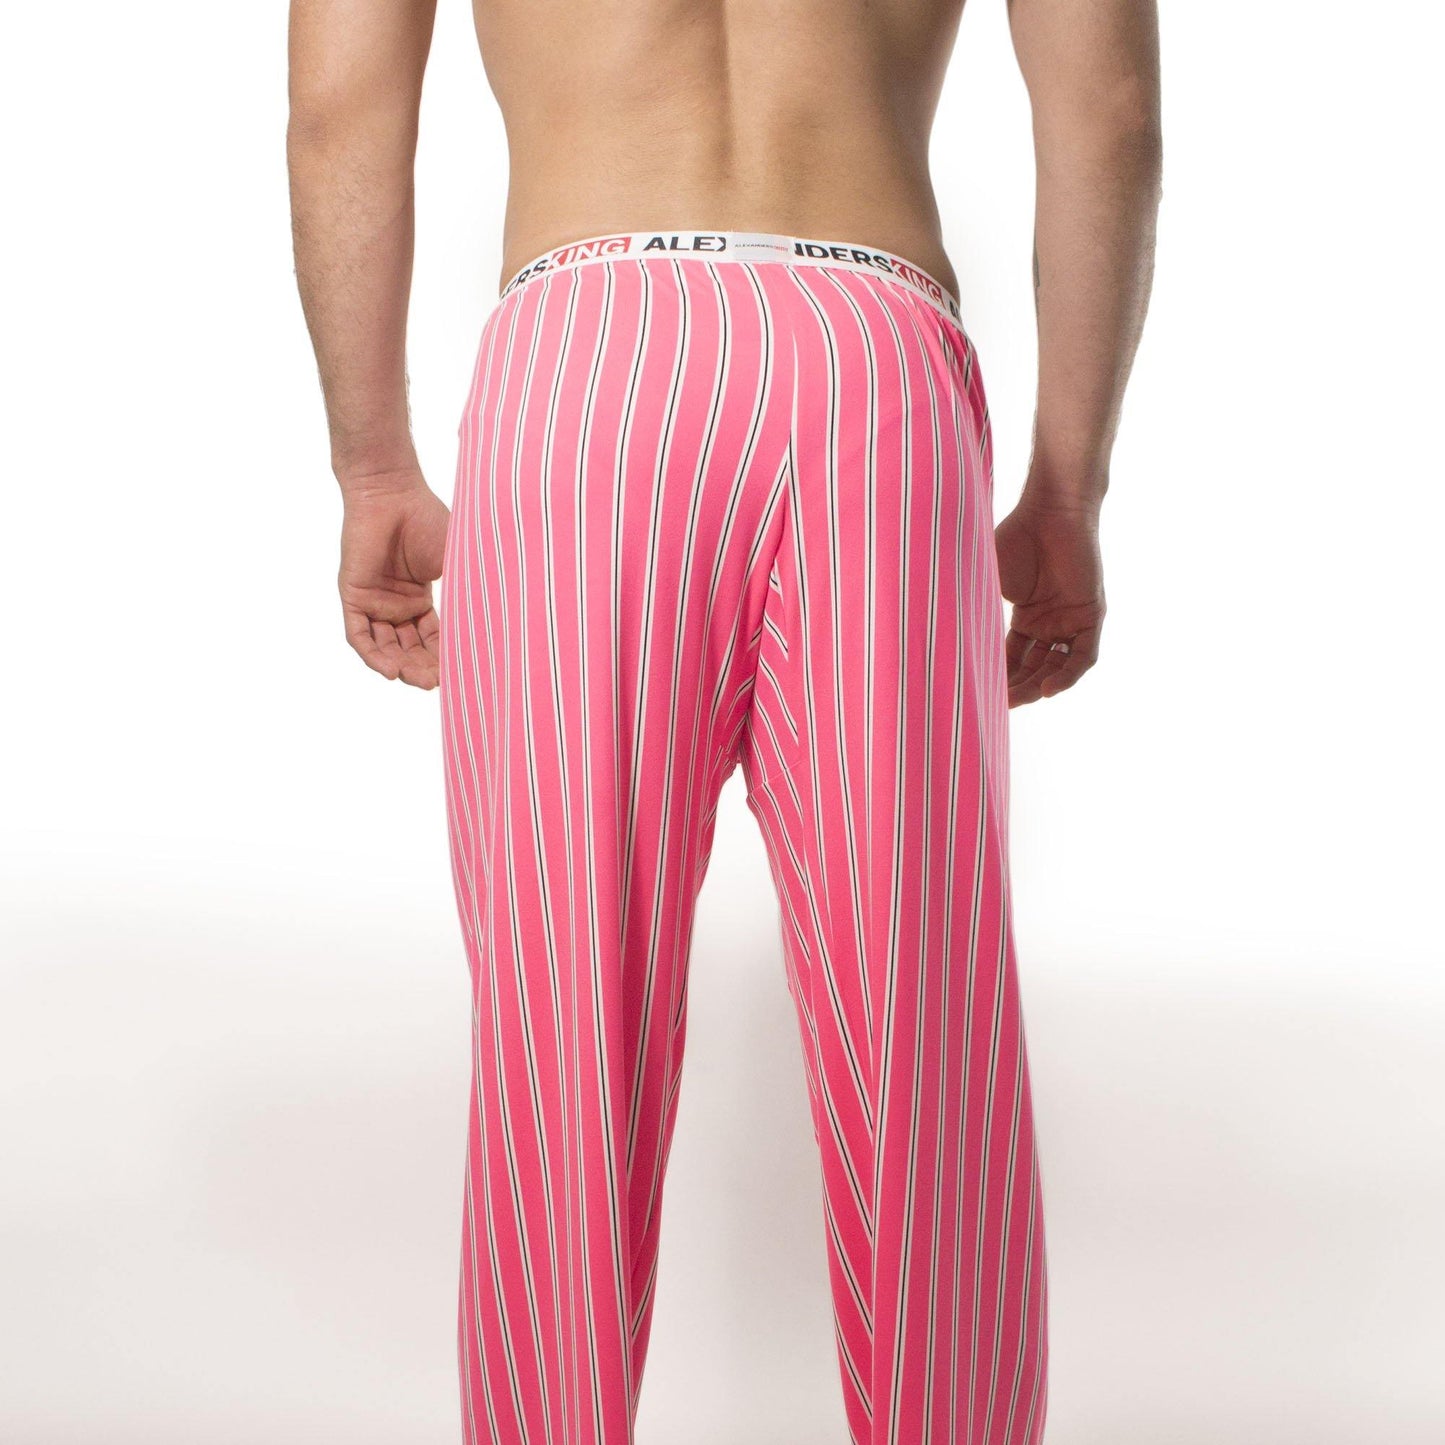 PP0006 - PantalÌ?n Pijama Bonet - AlexandersKing Underwear